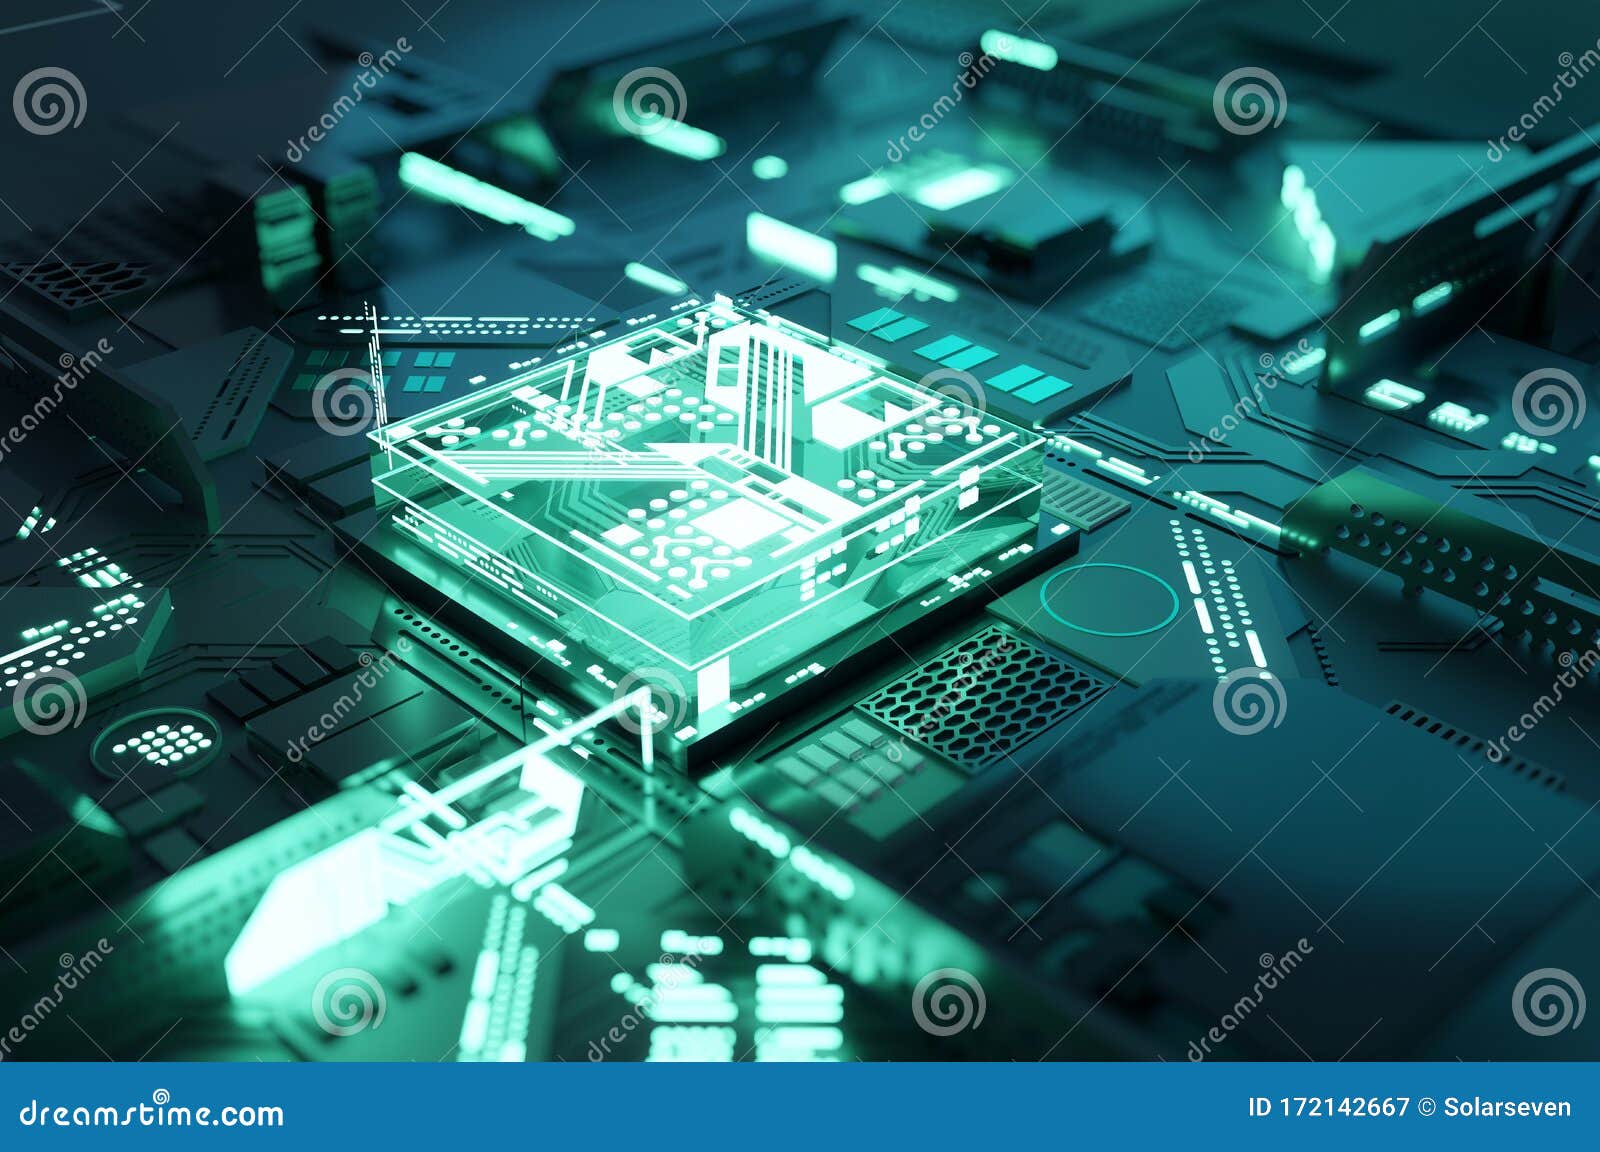 quantum computing processor cpu concept